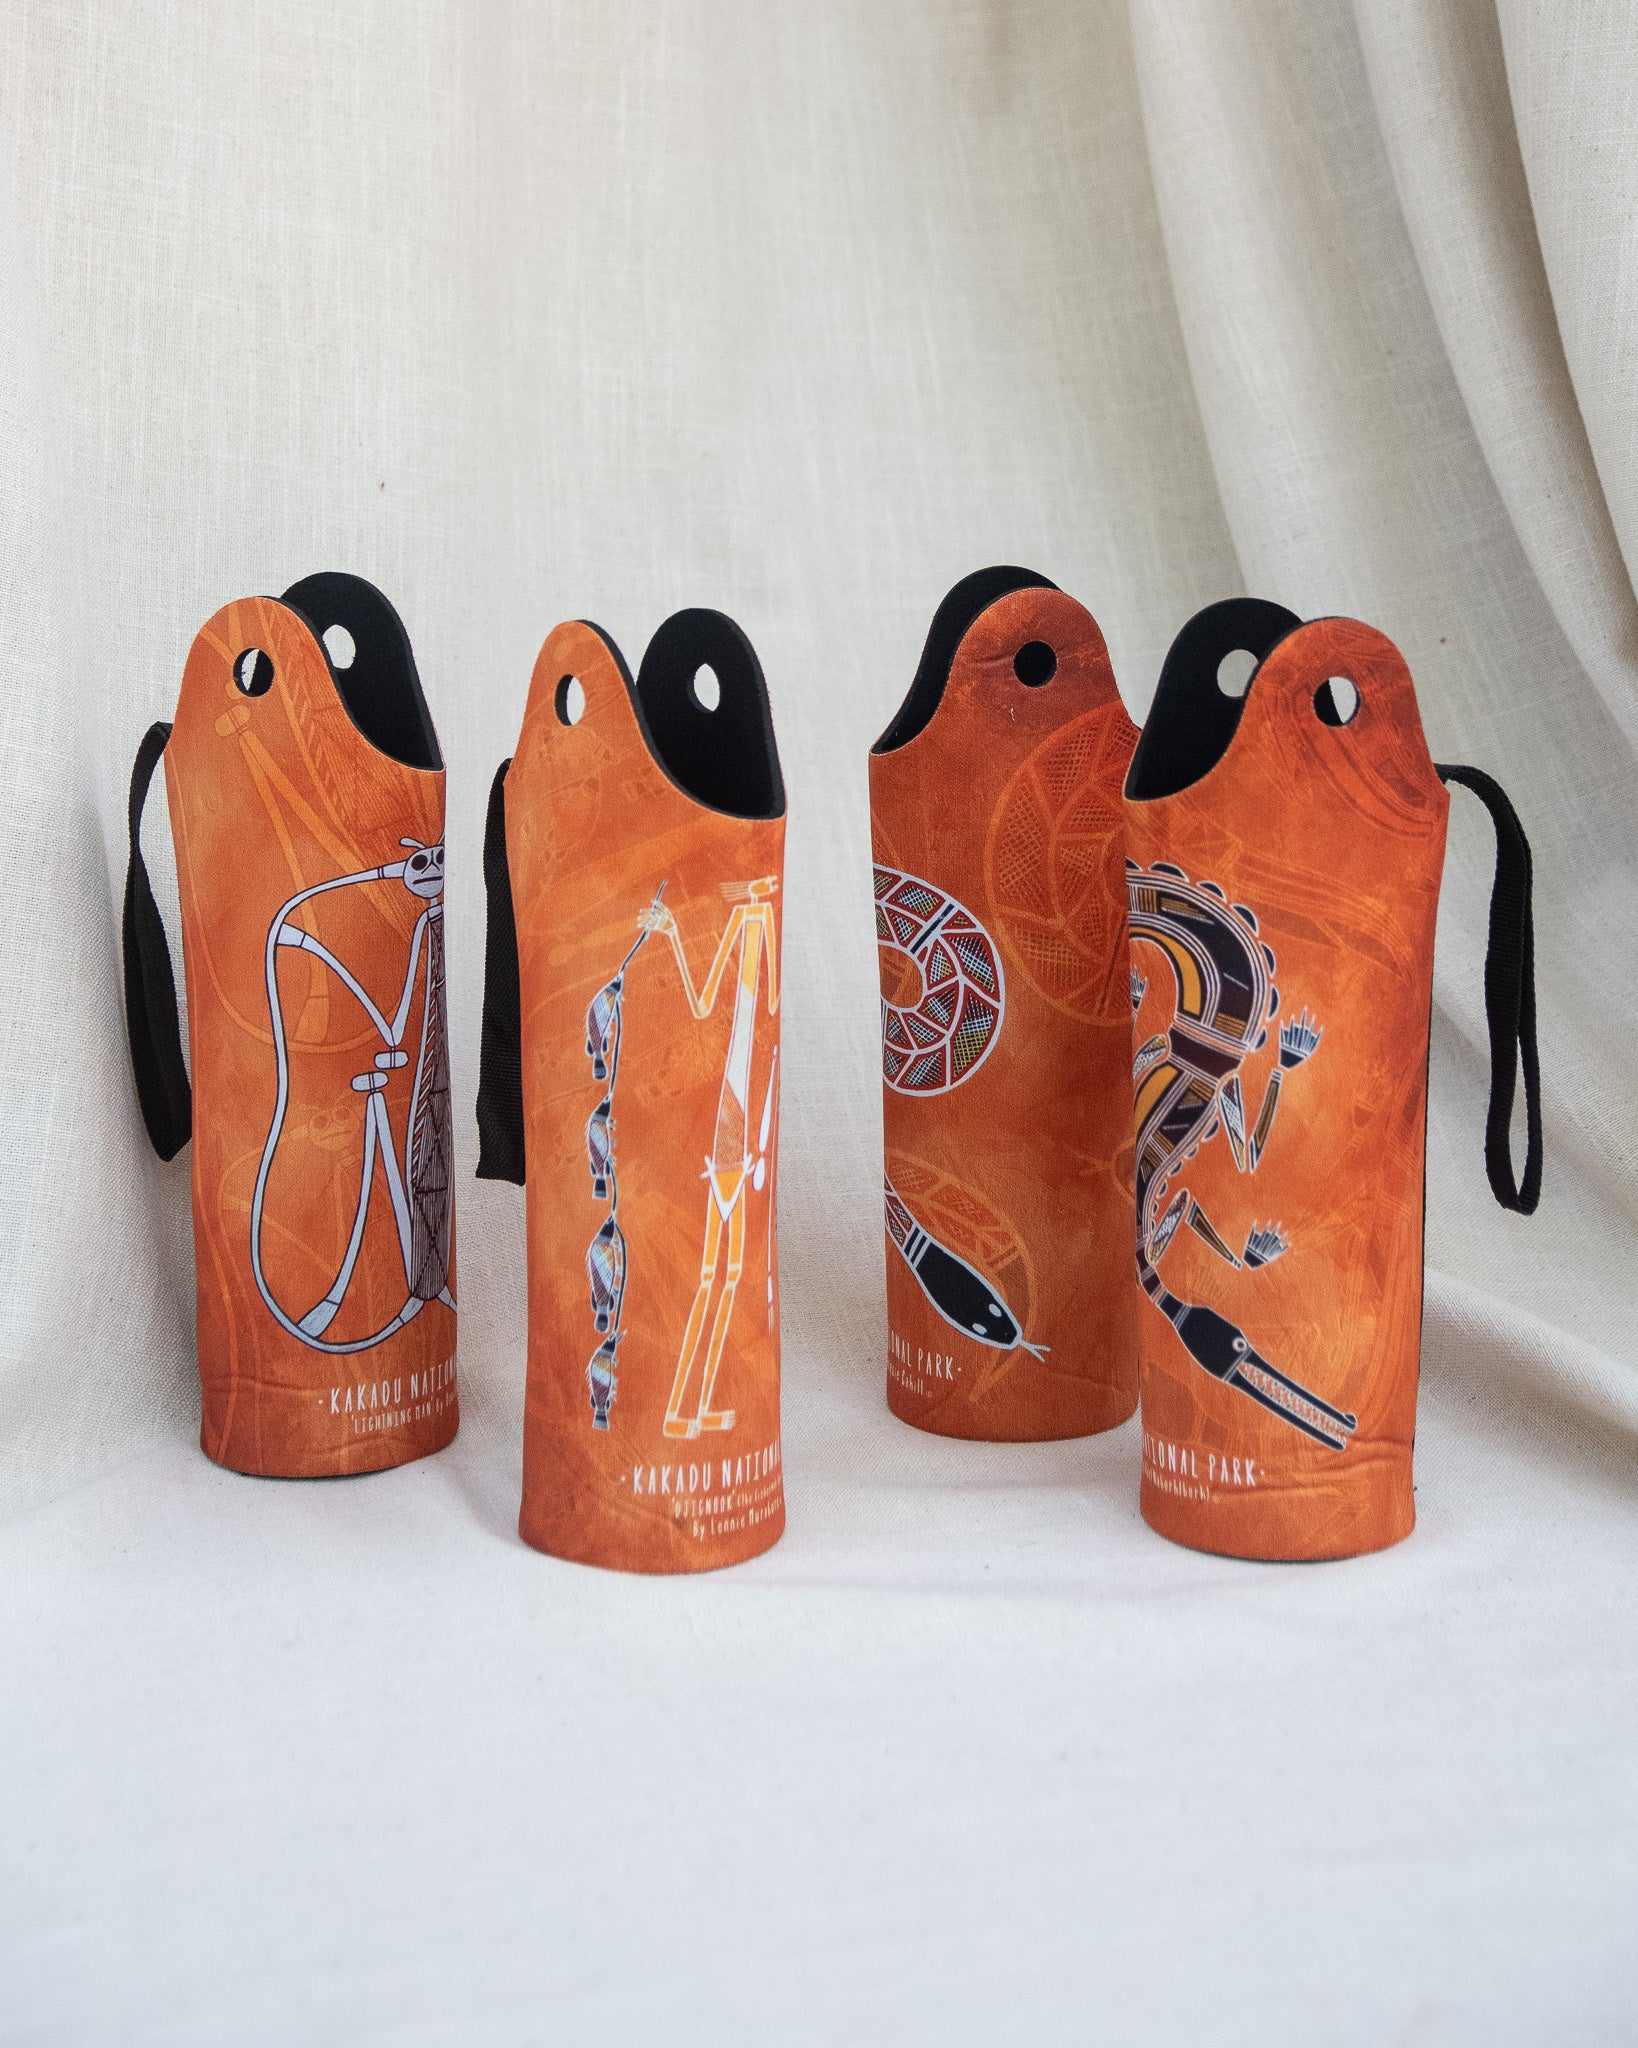 Kakadu Collection Long Neck Bottle Cooler